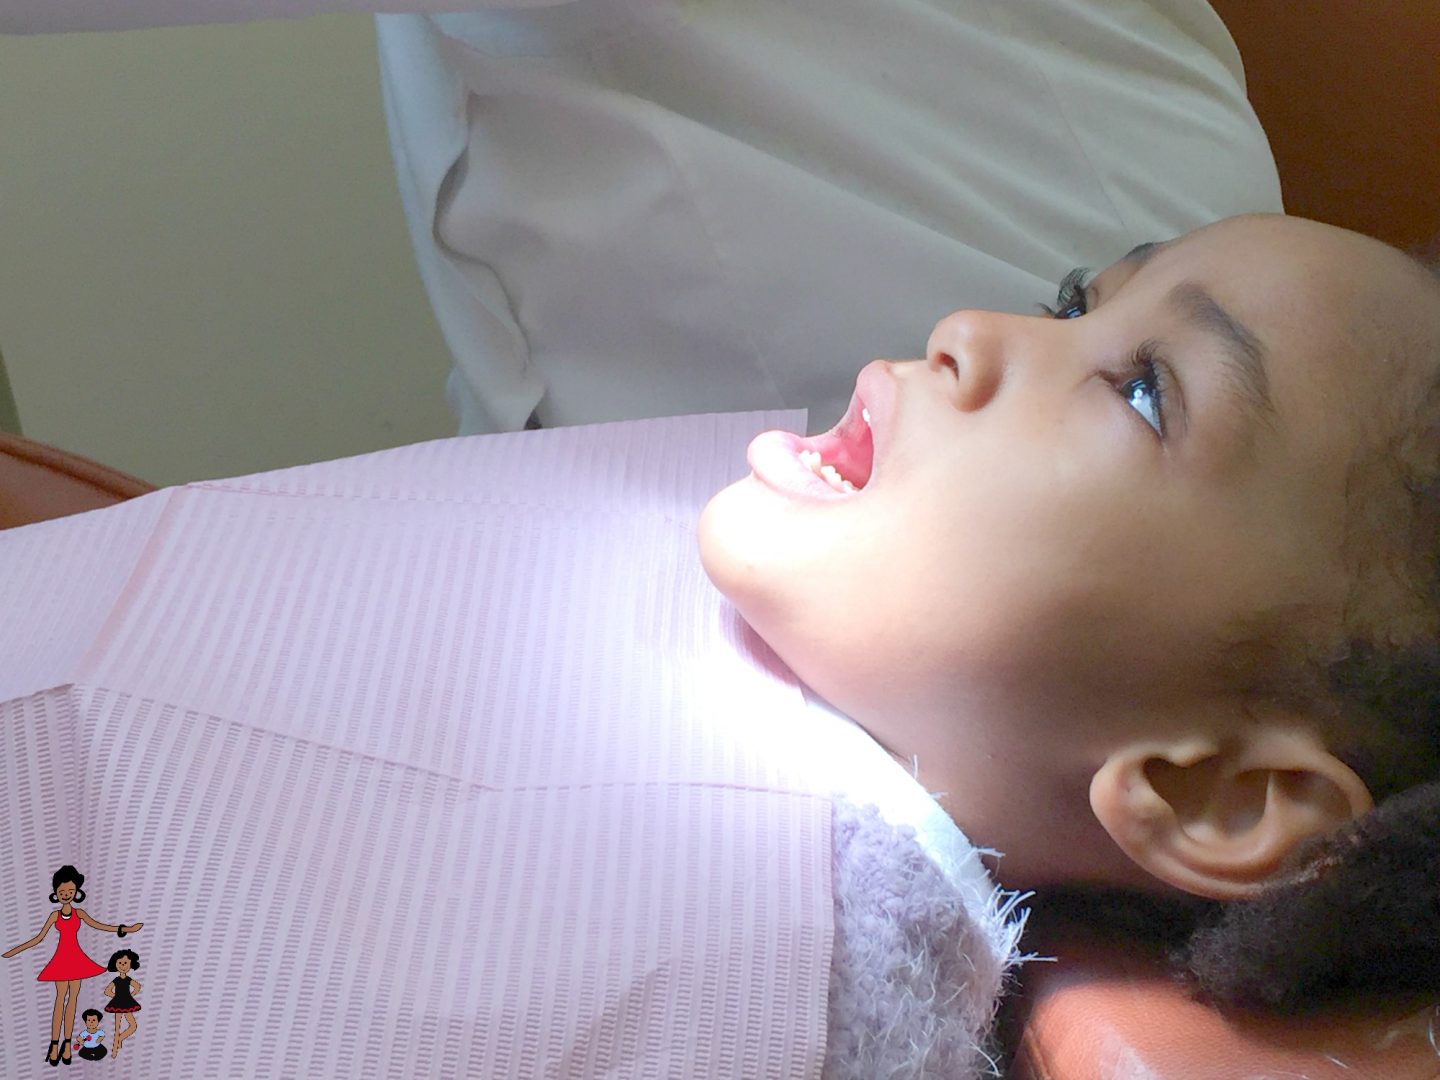 dental-visit-kids-preparation